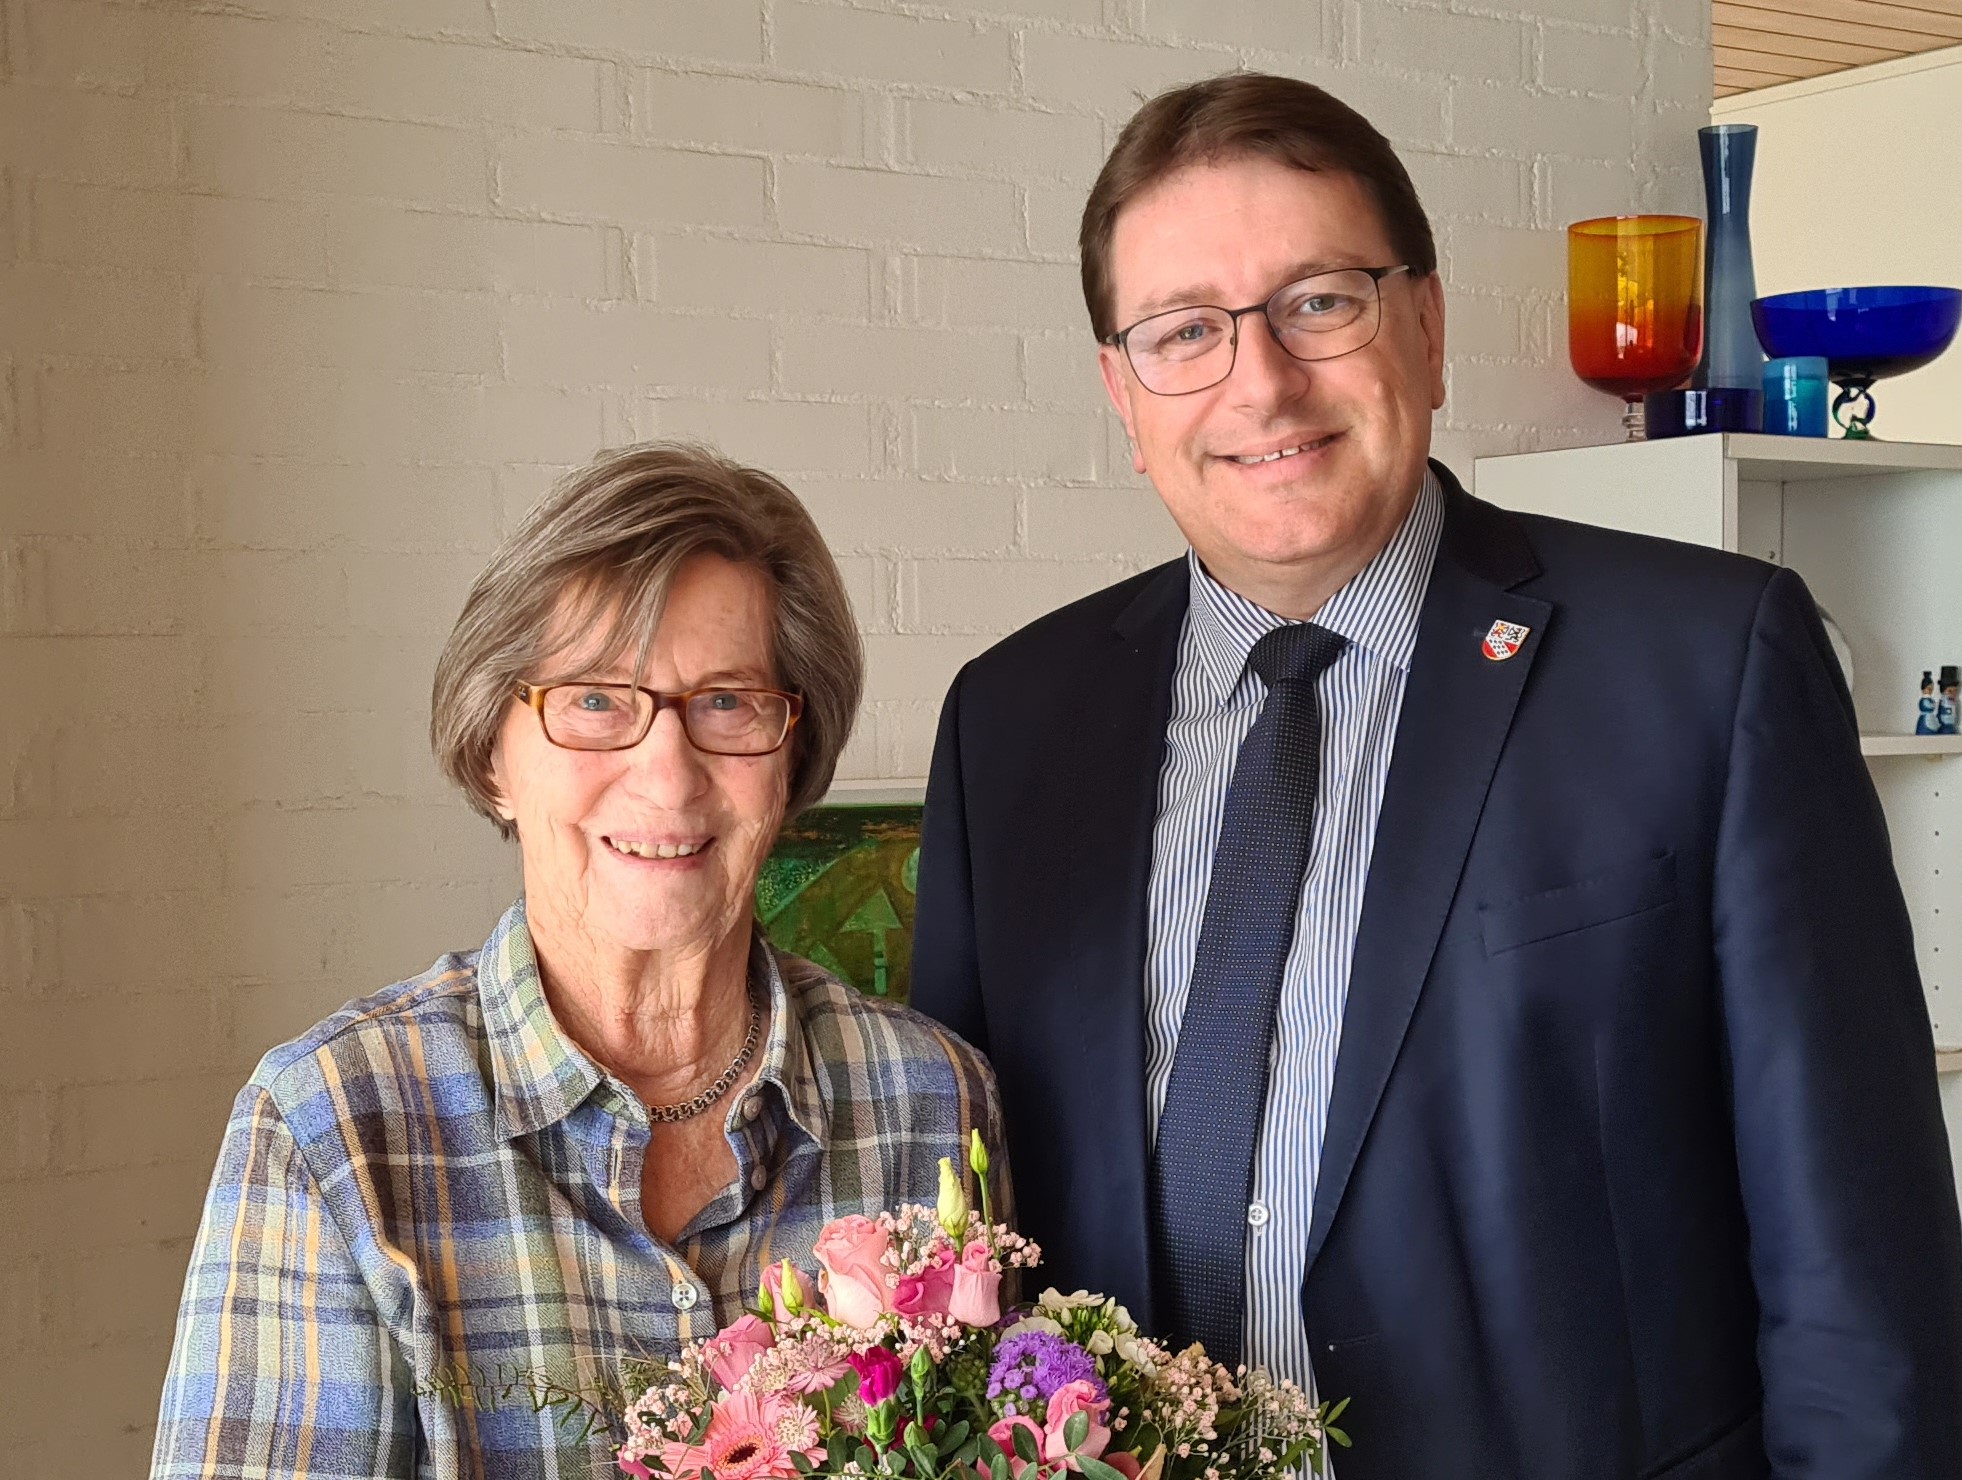 Am Sonntag 19. März 2023 feierte Frau Therese Sulzer ihren 90. Geburtstag.
 
Die Gemeindebehörden gratulieren herzlichst dazu!